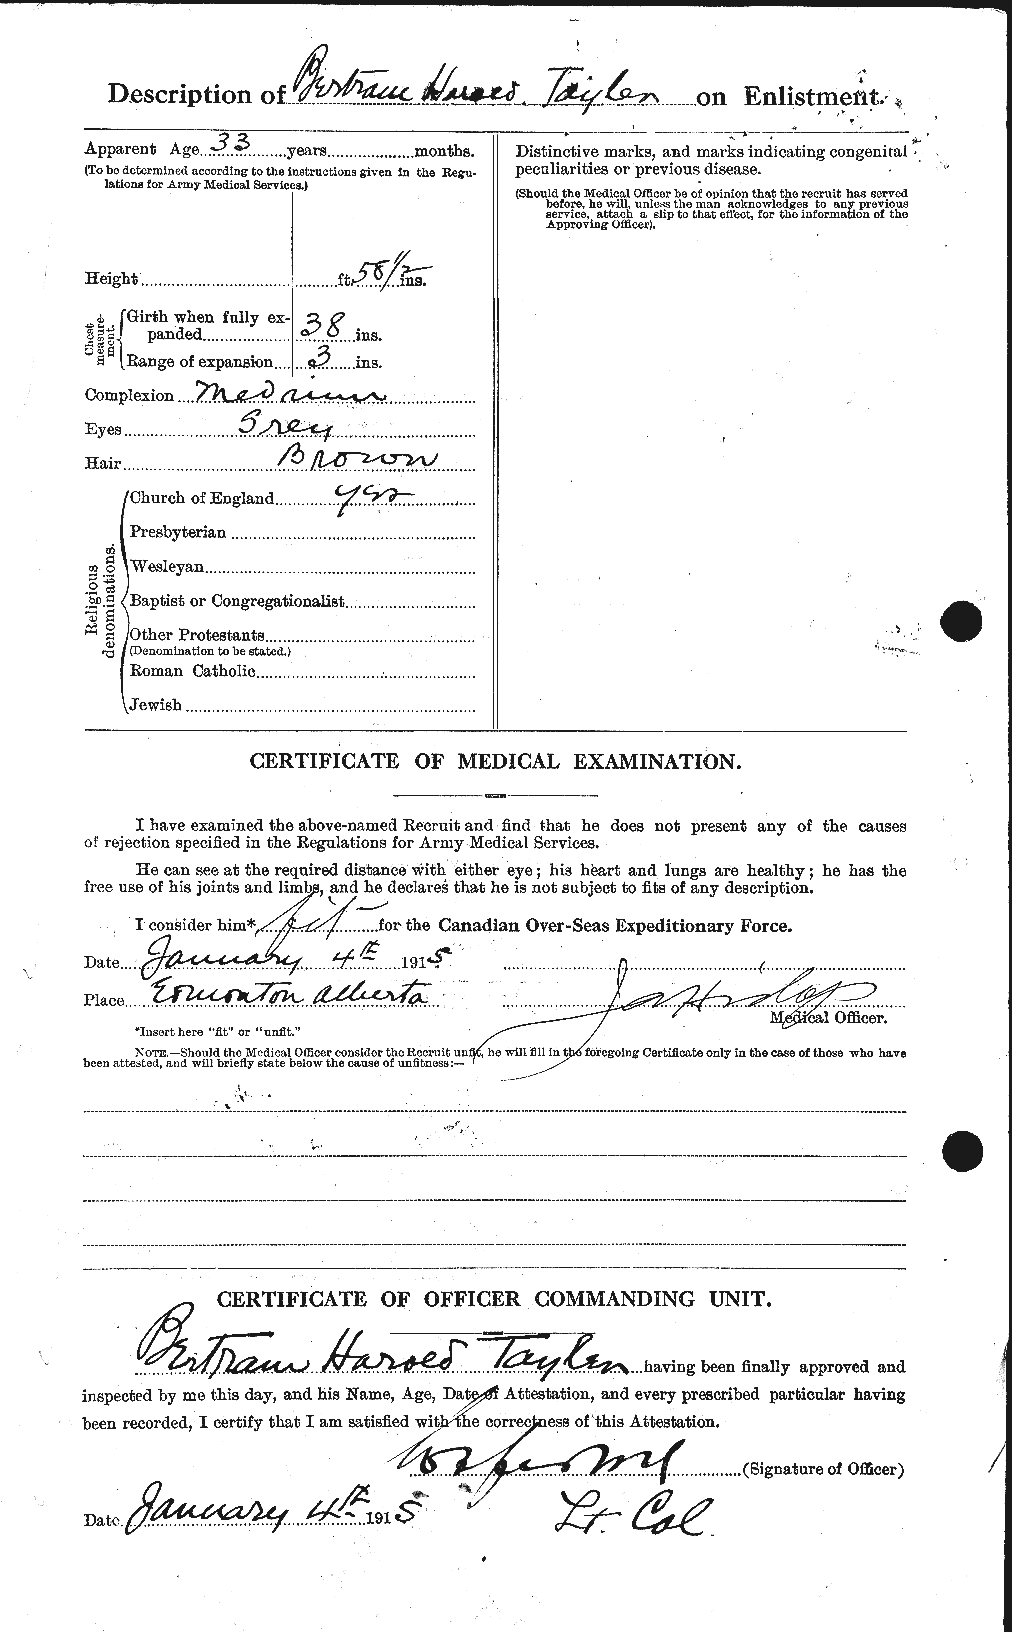 Dossiers du Personnel de la Première Guerre mondiale - CEC 626060b